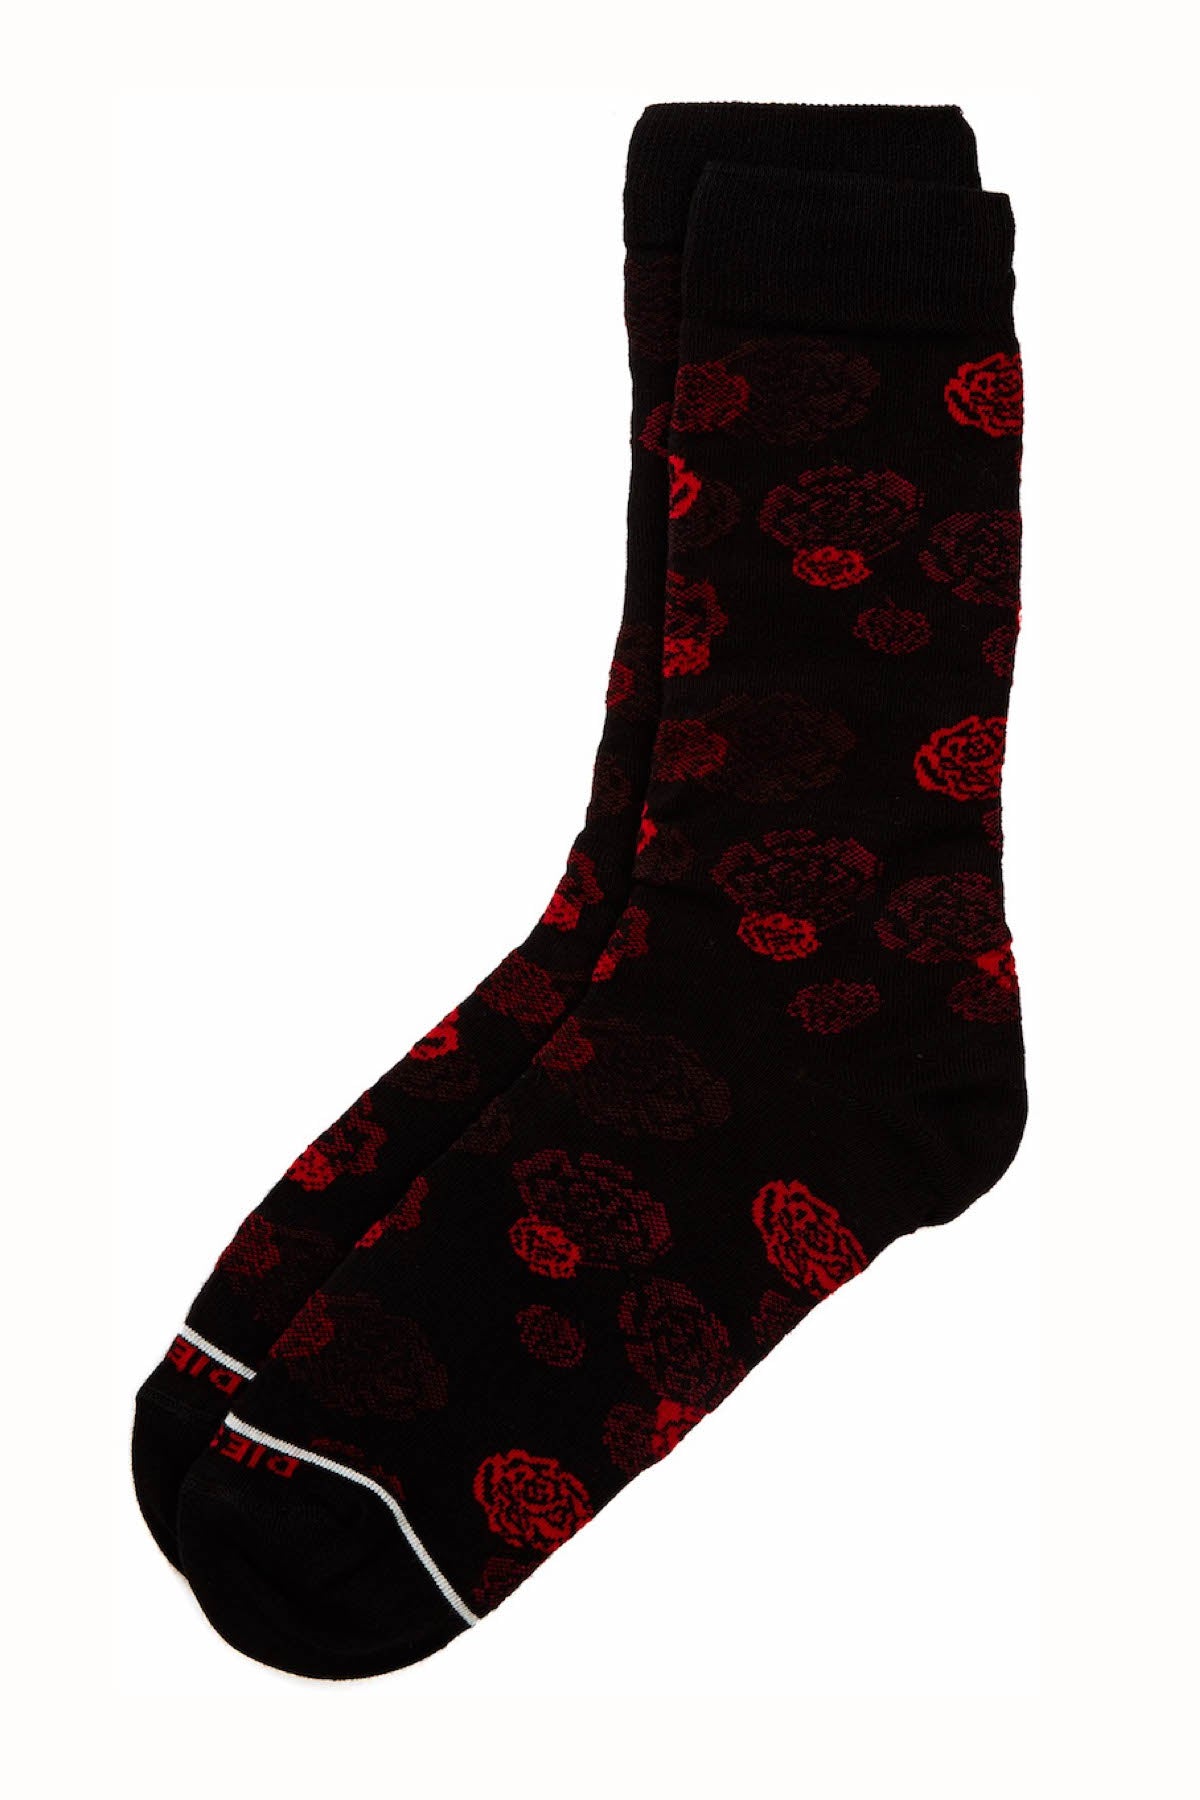 Diesel Black Rose Ray Socks